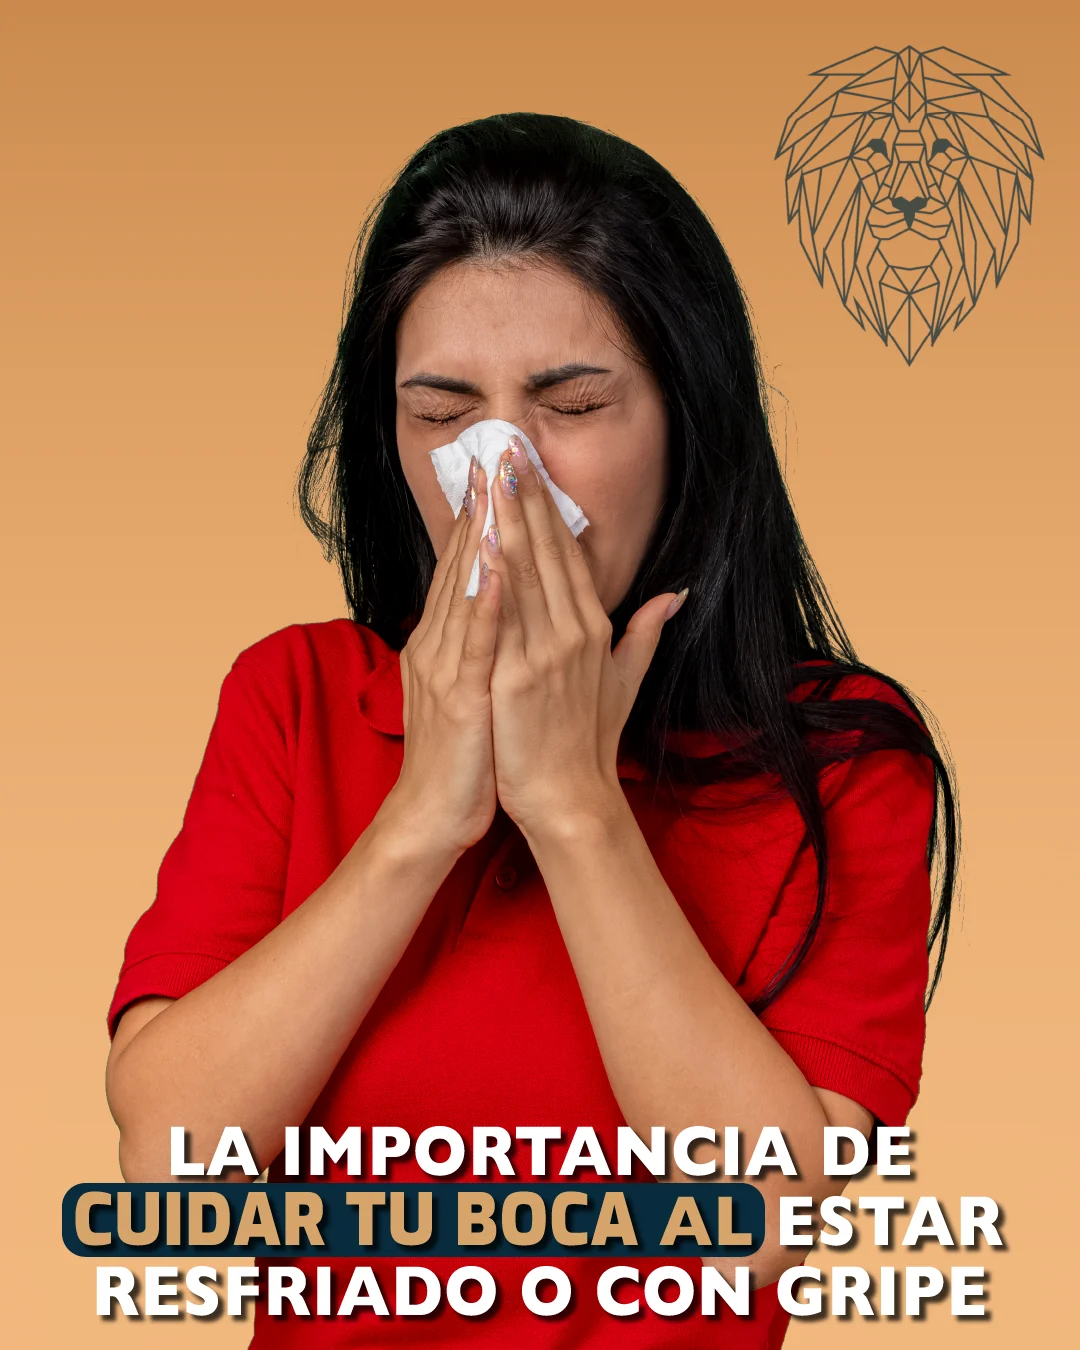 La importancia de cuidar tu boca al estar resfriado o con gripe